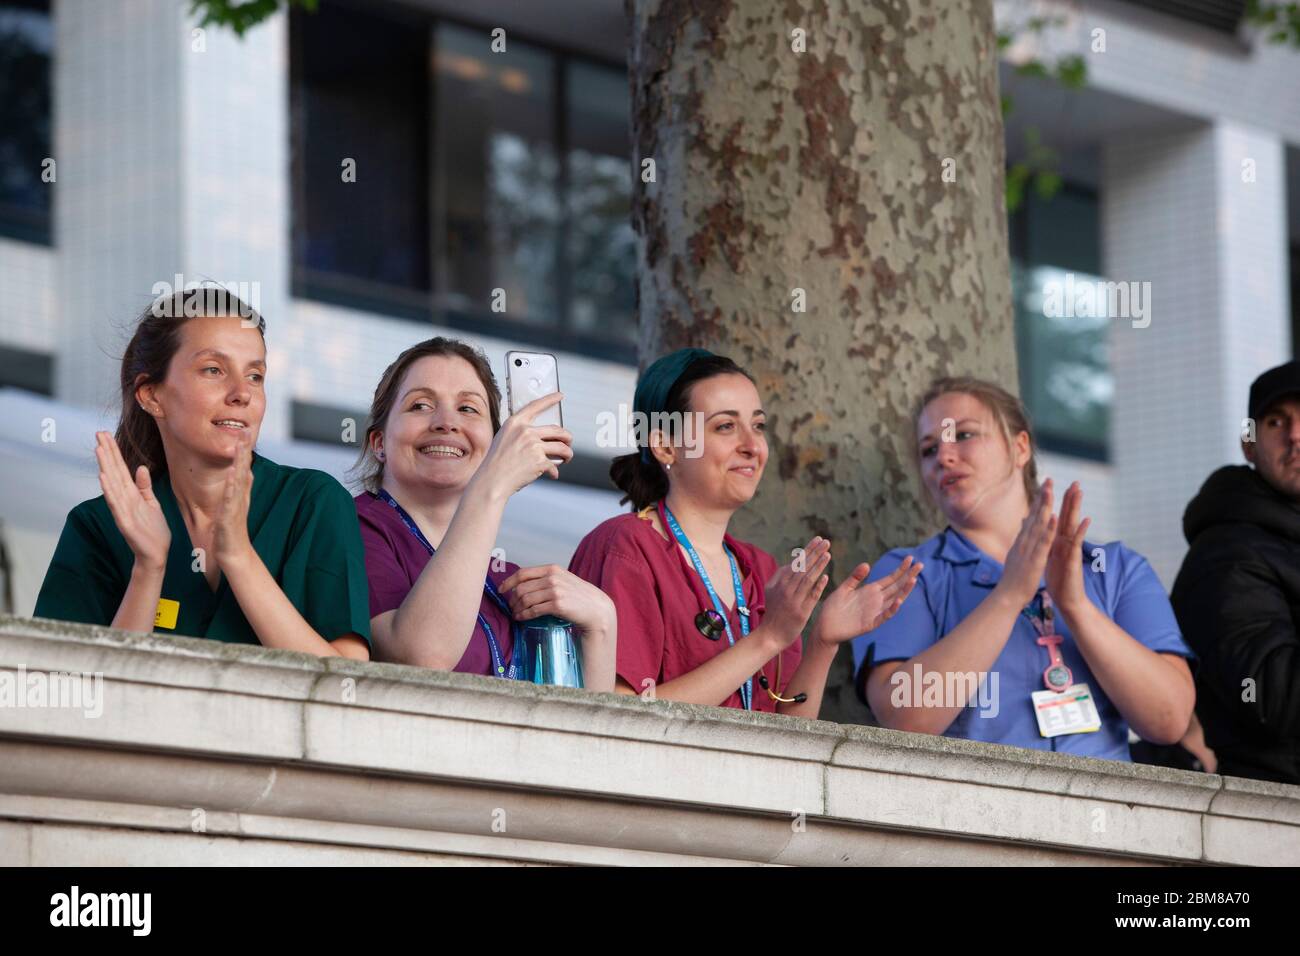 Londra, UK, 7 maggio 2020: Il personale dell'ospedale NHS St Thomas' si radunò sul muro che si affaccia sul Tamigi verso le Camere del Parlamento, dove diede e ricevette applausi per i loro sforzi dedicati a curare le vittime della pandemia COVID-19. Anna Watson/Alamy Live News Foto Stock